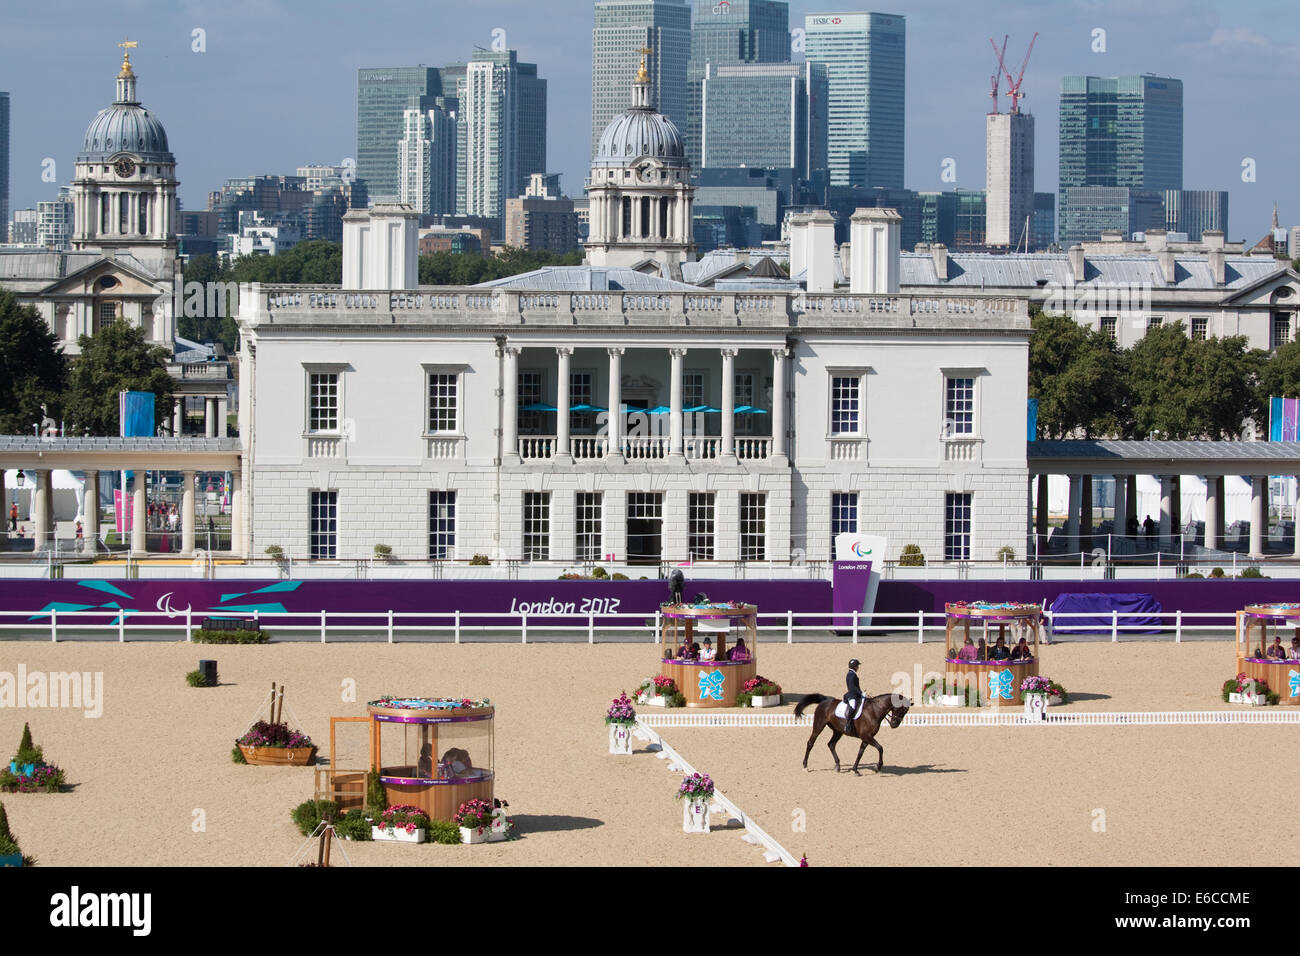 Les concours de dressage équestre dans le parc de Greenwich, au Jeux Paralympiques de Londres en 2012 Banque D'Images